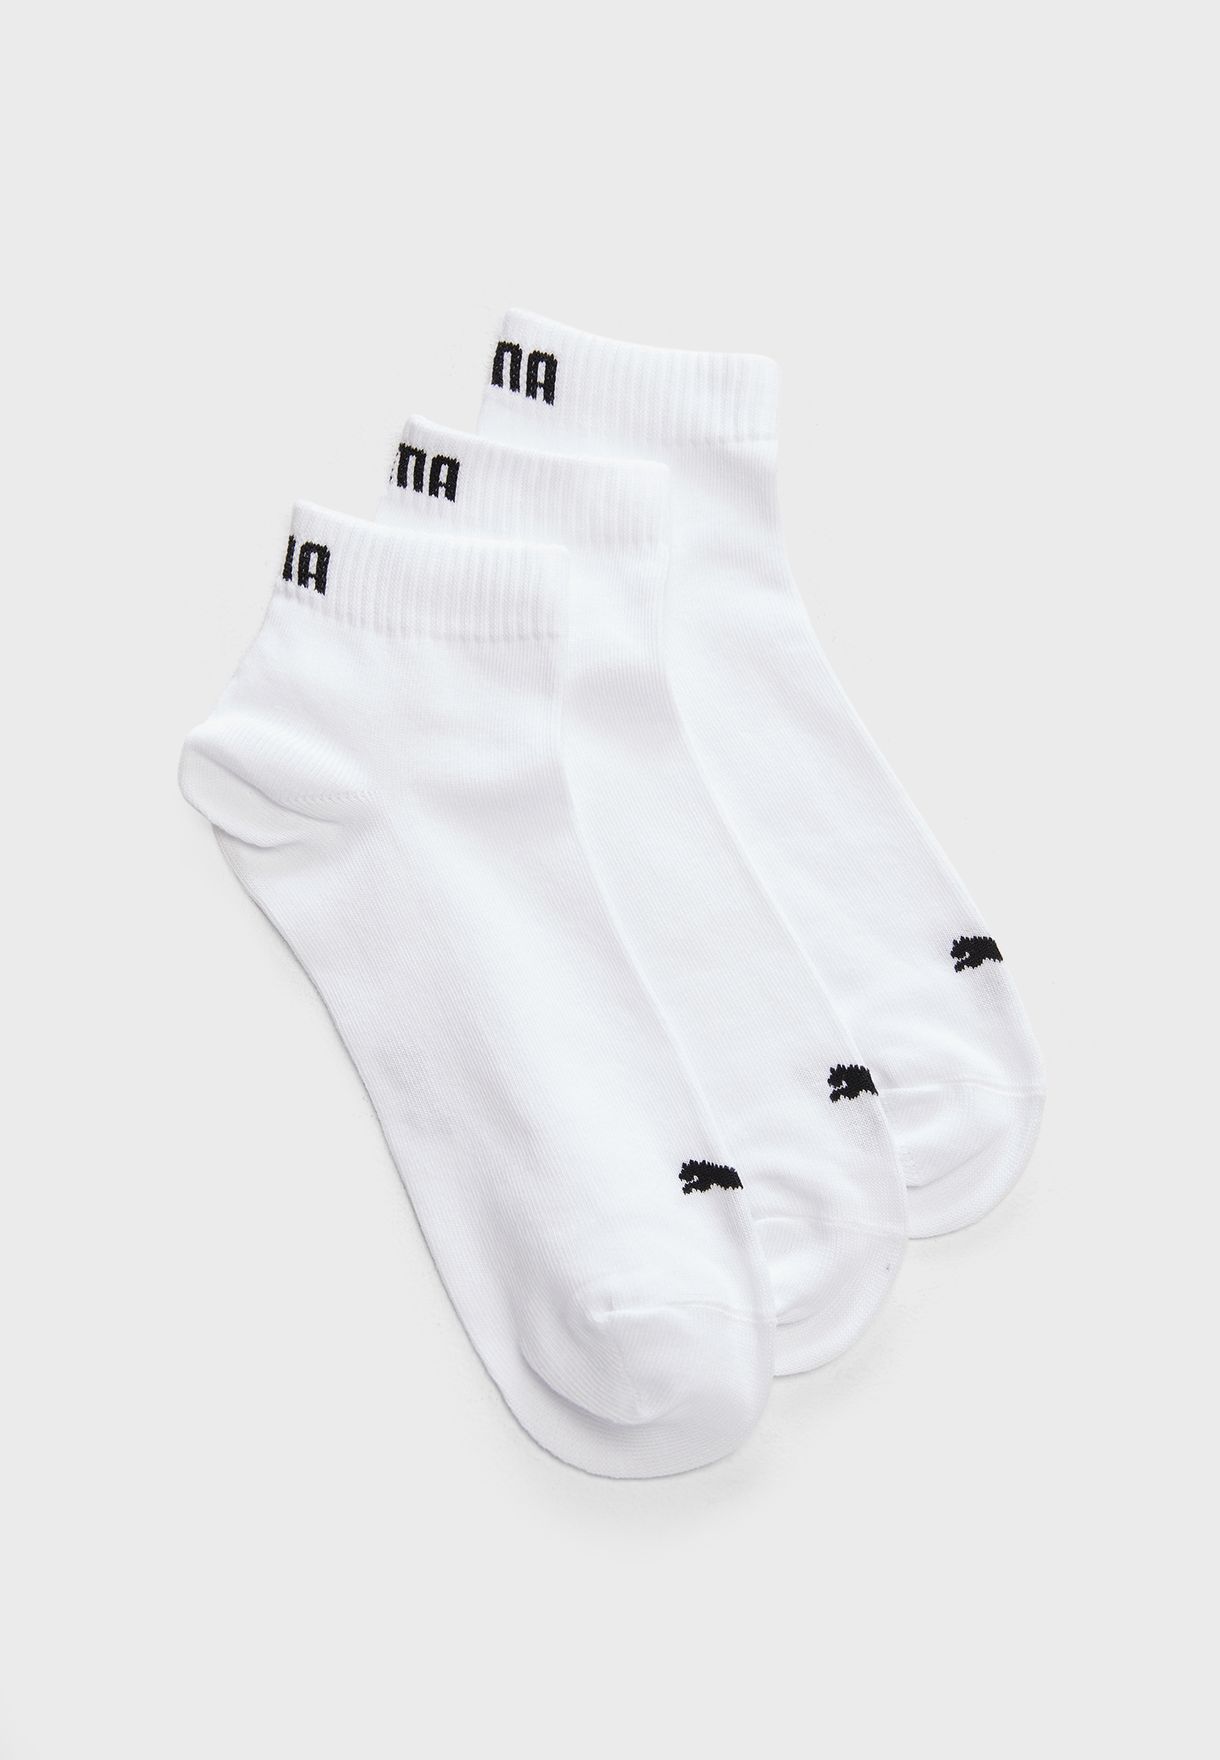 puma white socks pack of 3